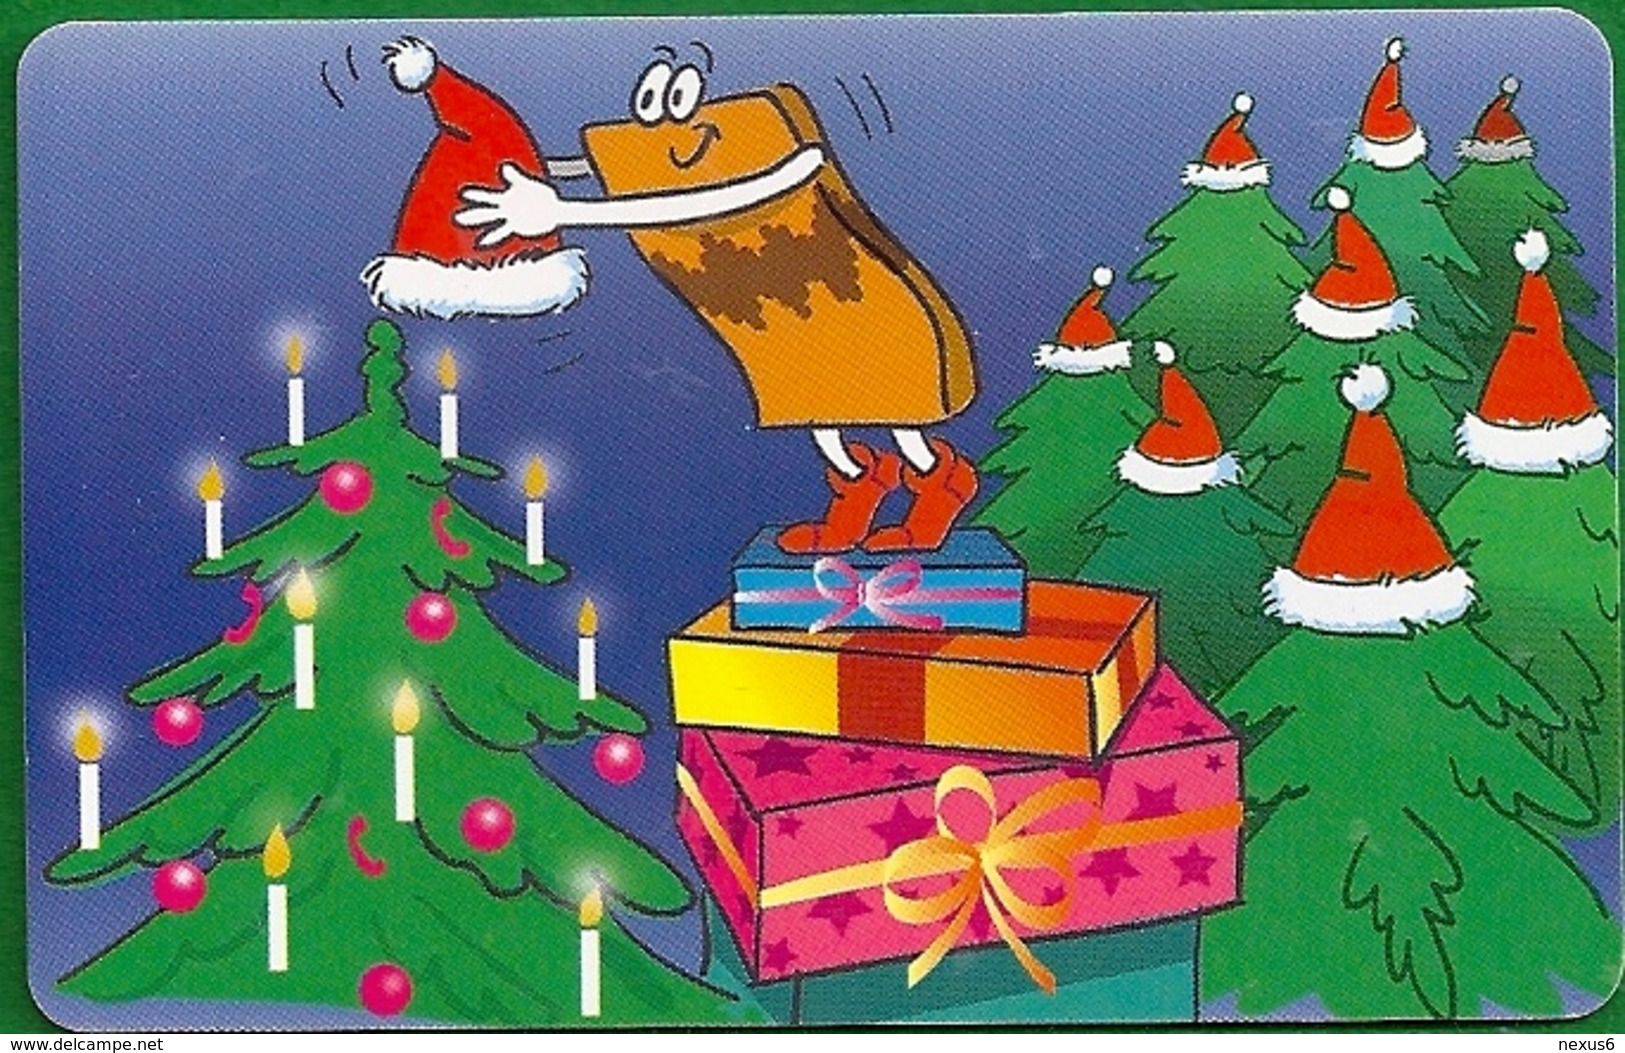 Germany - Die Lustigen Prepaid-Karten 6 - Christmas - M 03-10.2002 - 68.000ex, Used - M-Reeksen : Merchandising